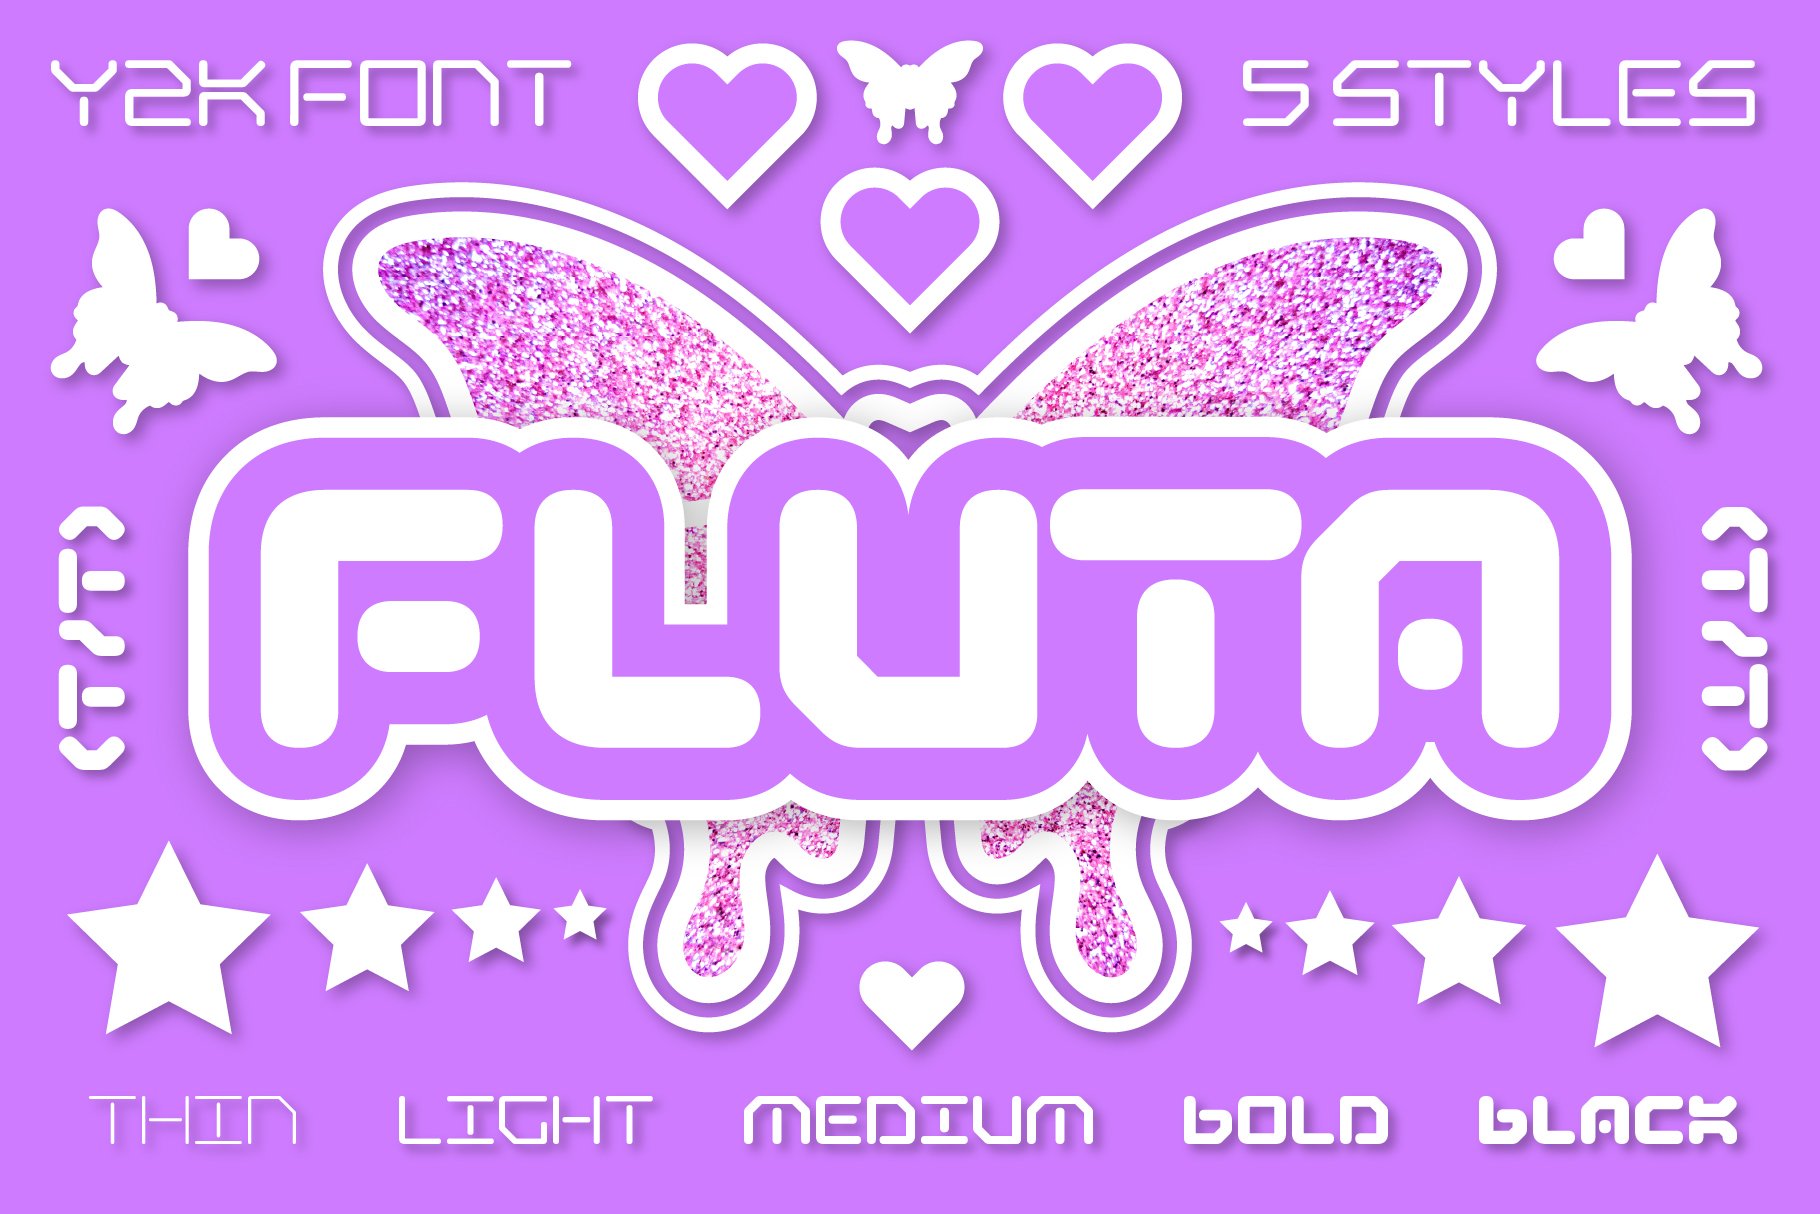 Y2K Variable Font: Fluta cover image.